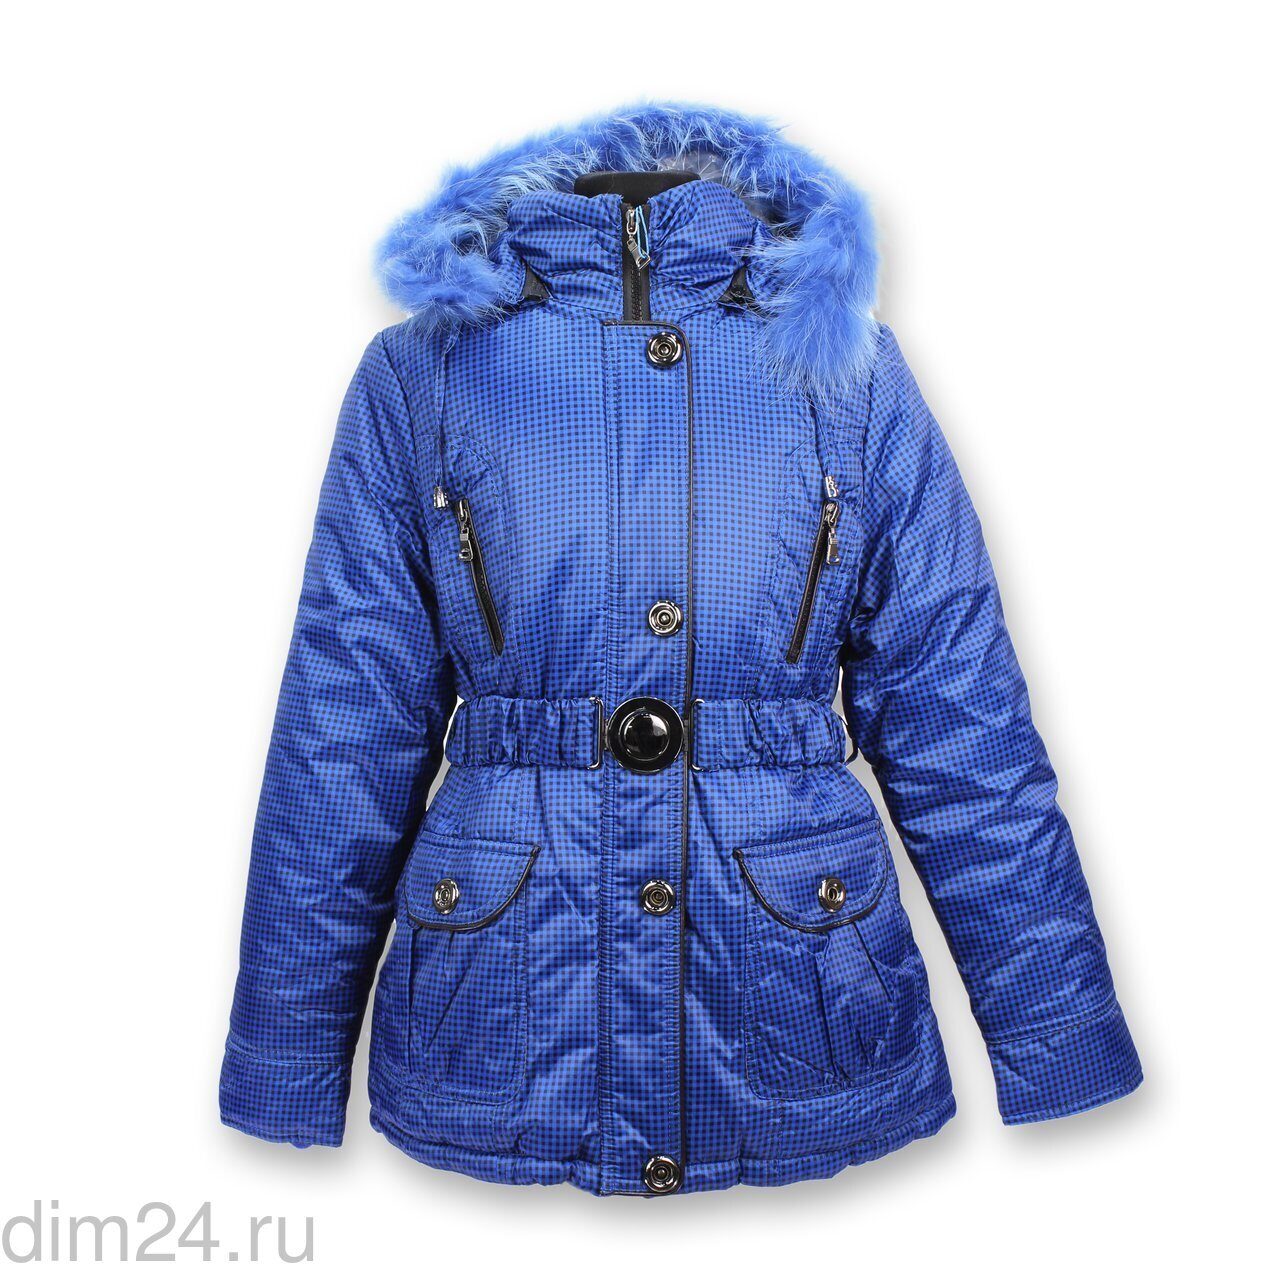 Куртка для девочек зима Moonbox размеры с S по 2XL (5 шт.)